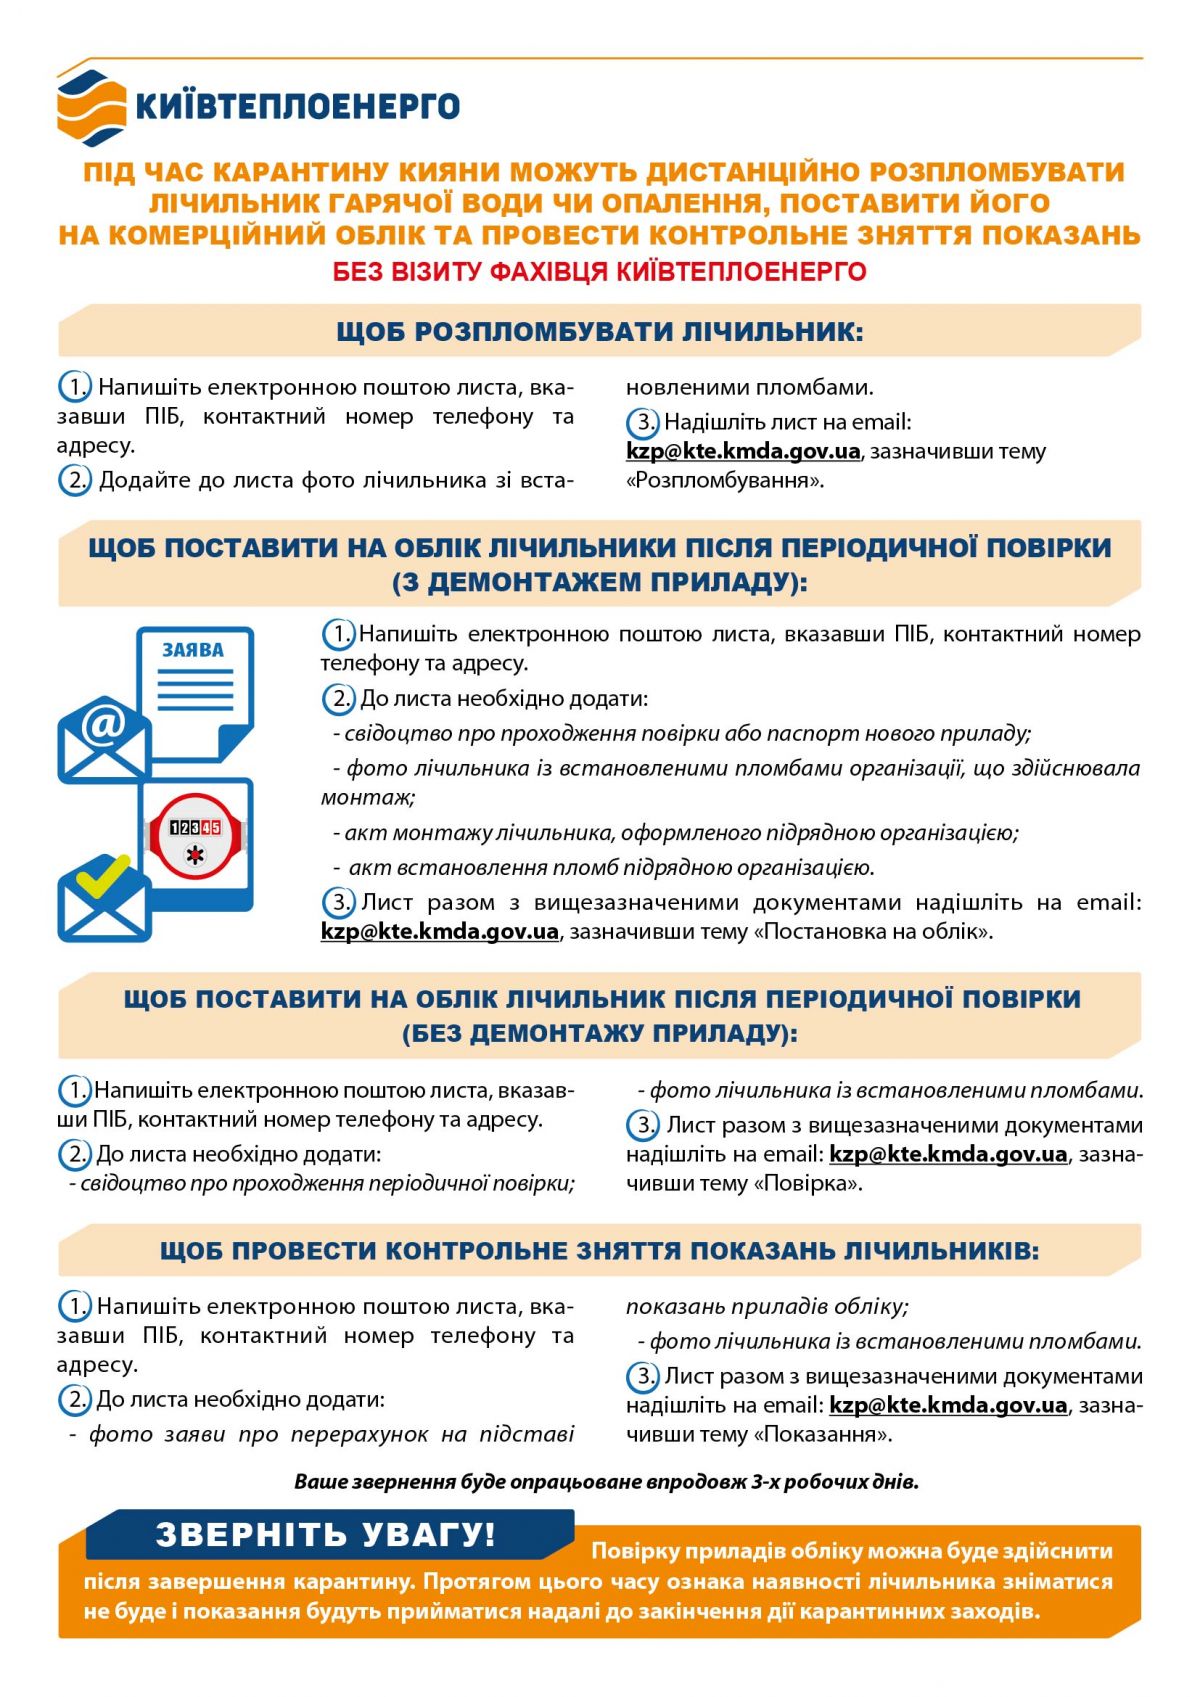 Киевтеплоэнерго инфографика